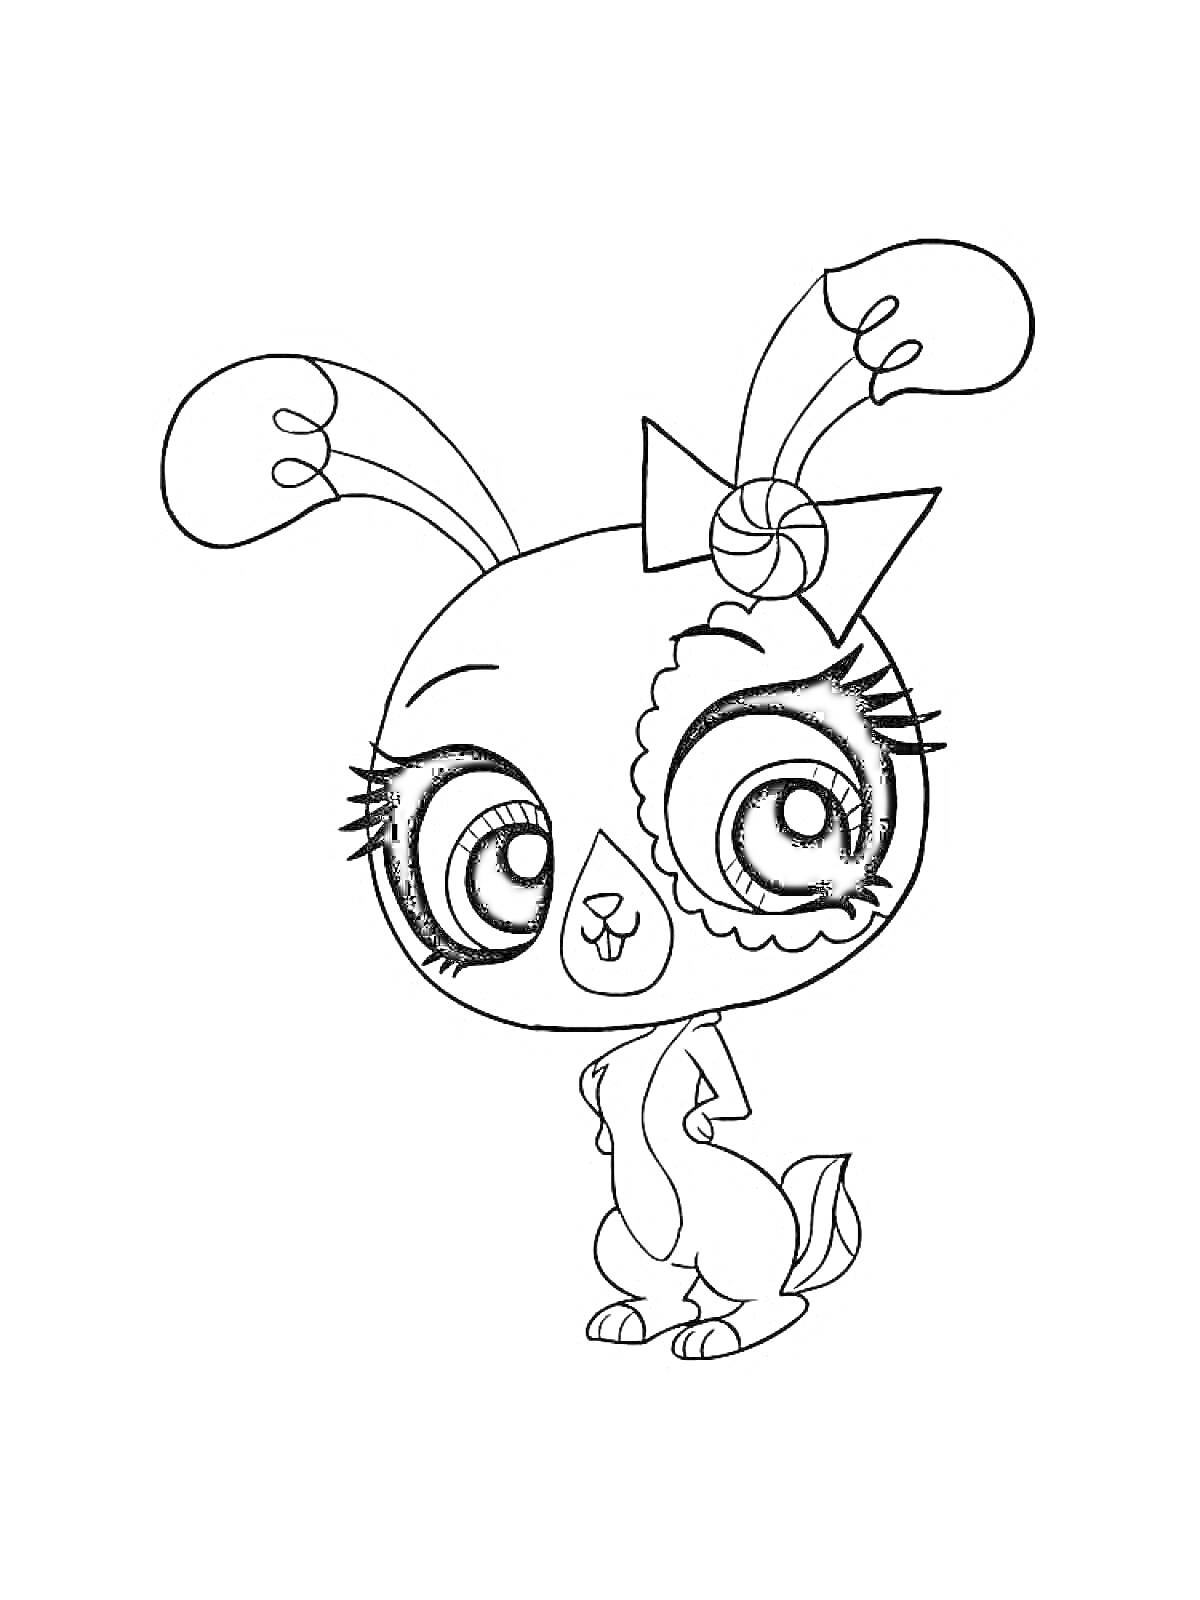 Раскраска Маленький Зоомагазин - Симпатичный кролик с бантиком на голове